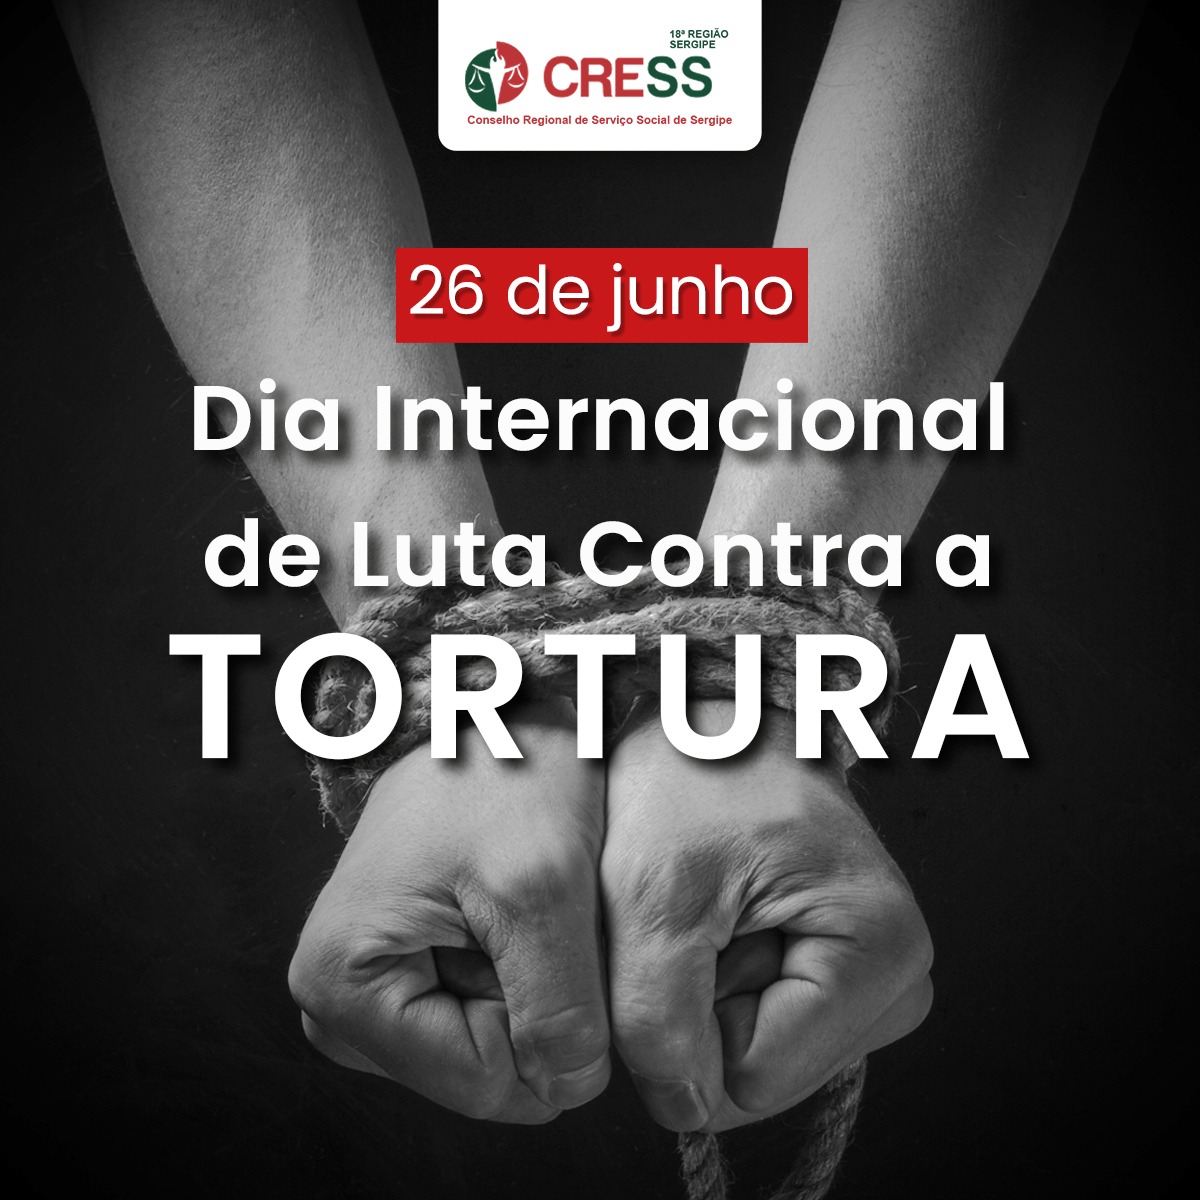 Dia Internacional de Luta Contra a Tortura: um chamado à consciência